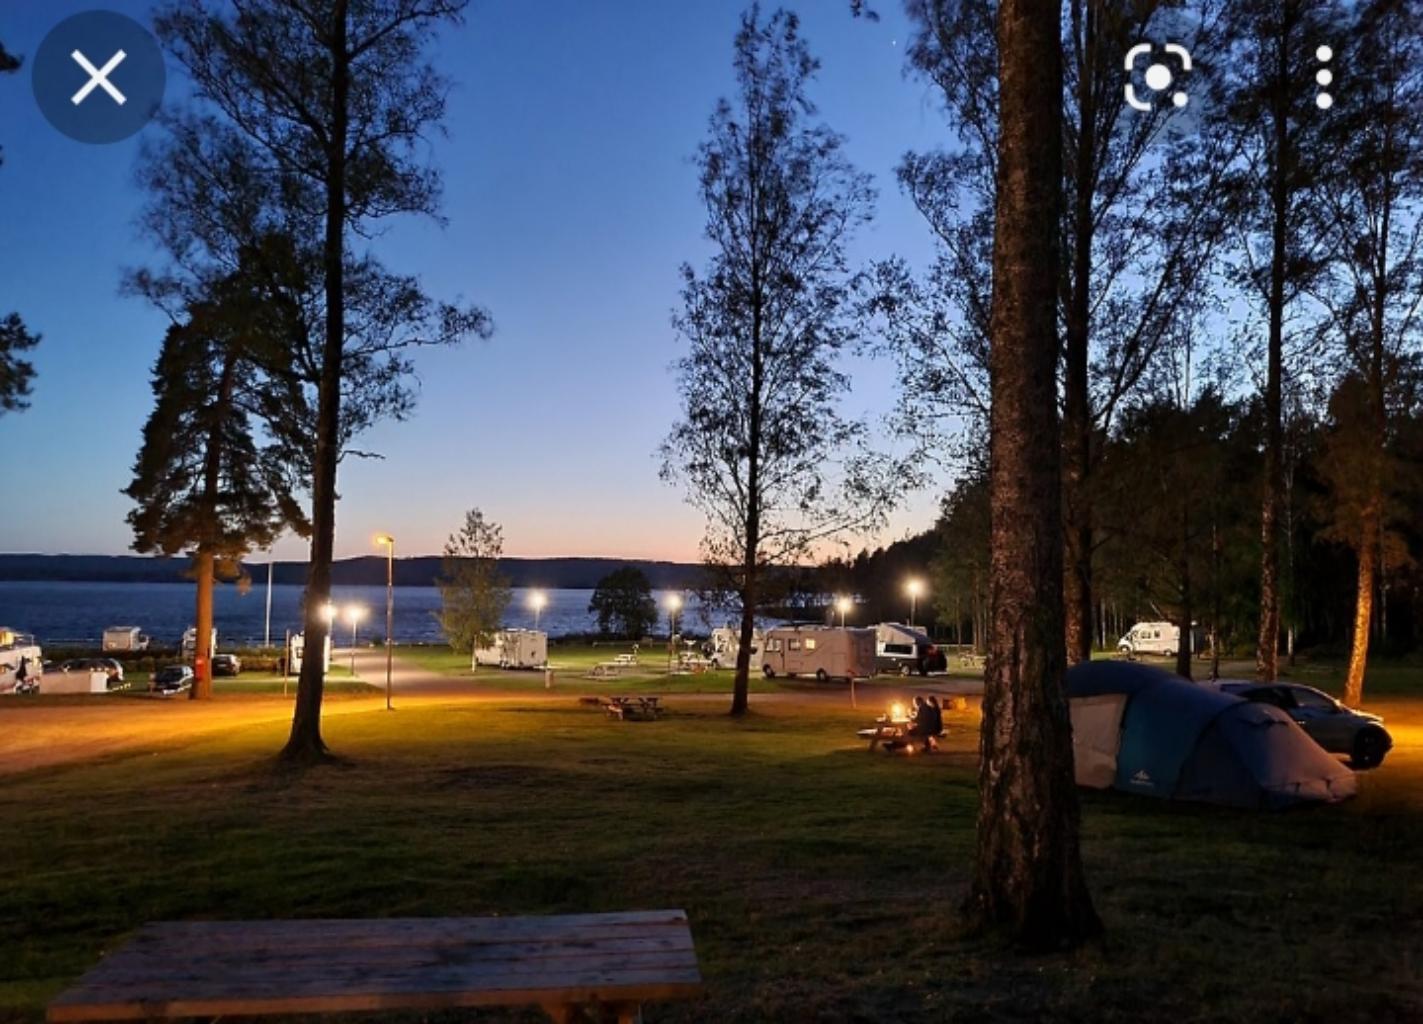 Ке́мпинг (от англ. camping «проживание в лагере») — оборудованный летний лагерь для автотуристов c местами для установки палаток или лёгкими домиками, местами для стоянки автомобилей (на общей стоянке или непосредственно у жилья) и туалетами. Функционирование кемпинга основано на самообслуживании. Кемпинг может также включать инфраструктуру сферы обслуживания, например магазины, эстакады для осмотра и мойки автомобилей. В русском языке «кемпинг» приобрел иное значение, чем исходное английское слово camping, под которым подразумевается вид туризма, связанный с проживанием в палатках, домиках на колёсах или специально оборудованных лёгких домиках. У нас в черте города нету спец.отведенного места для активного отдыха.Предлогаю установить 5-6 беседок со столами , зоной барбекю,лавочек,качелей,контейнеров для мусора. Можно также отдыхать как в летнее время так и в зимнее.